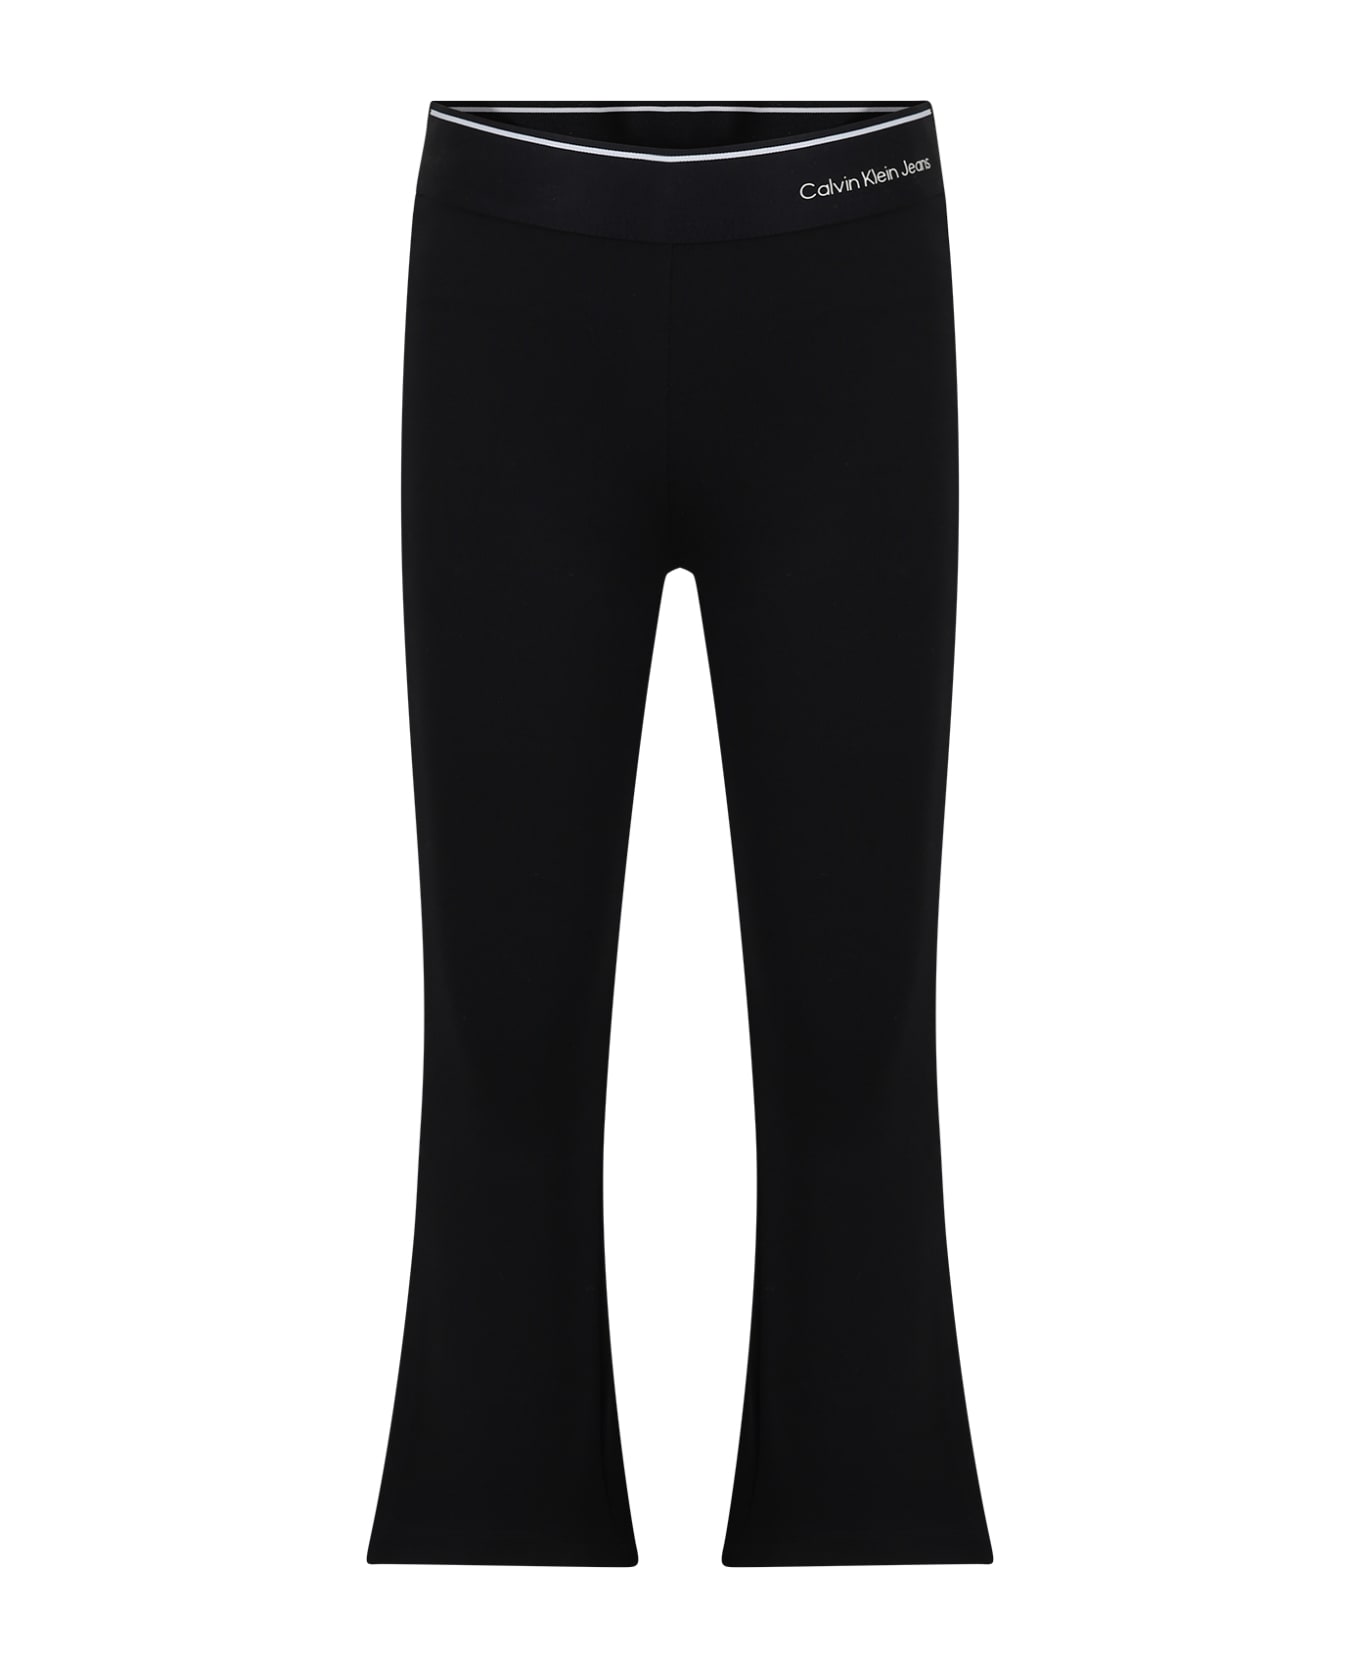 Calvin Klein Black Leggings For Girl With Logo - Black